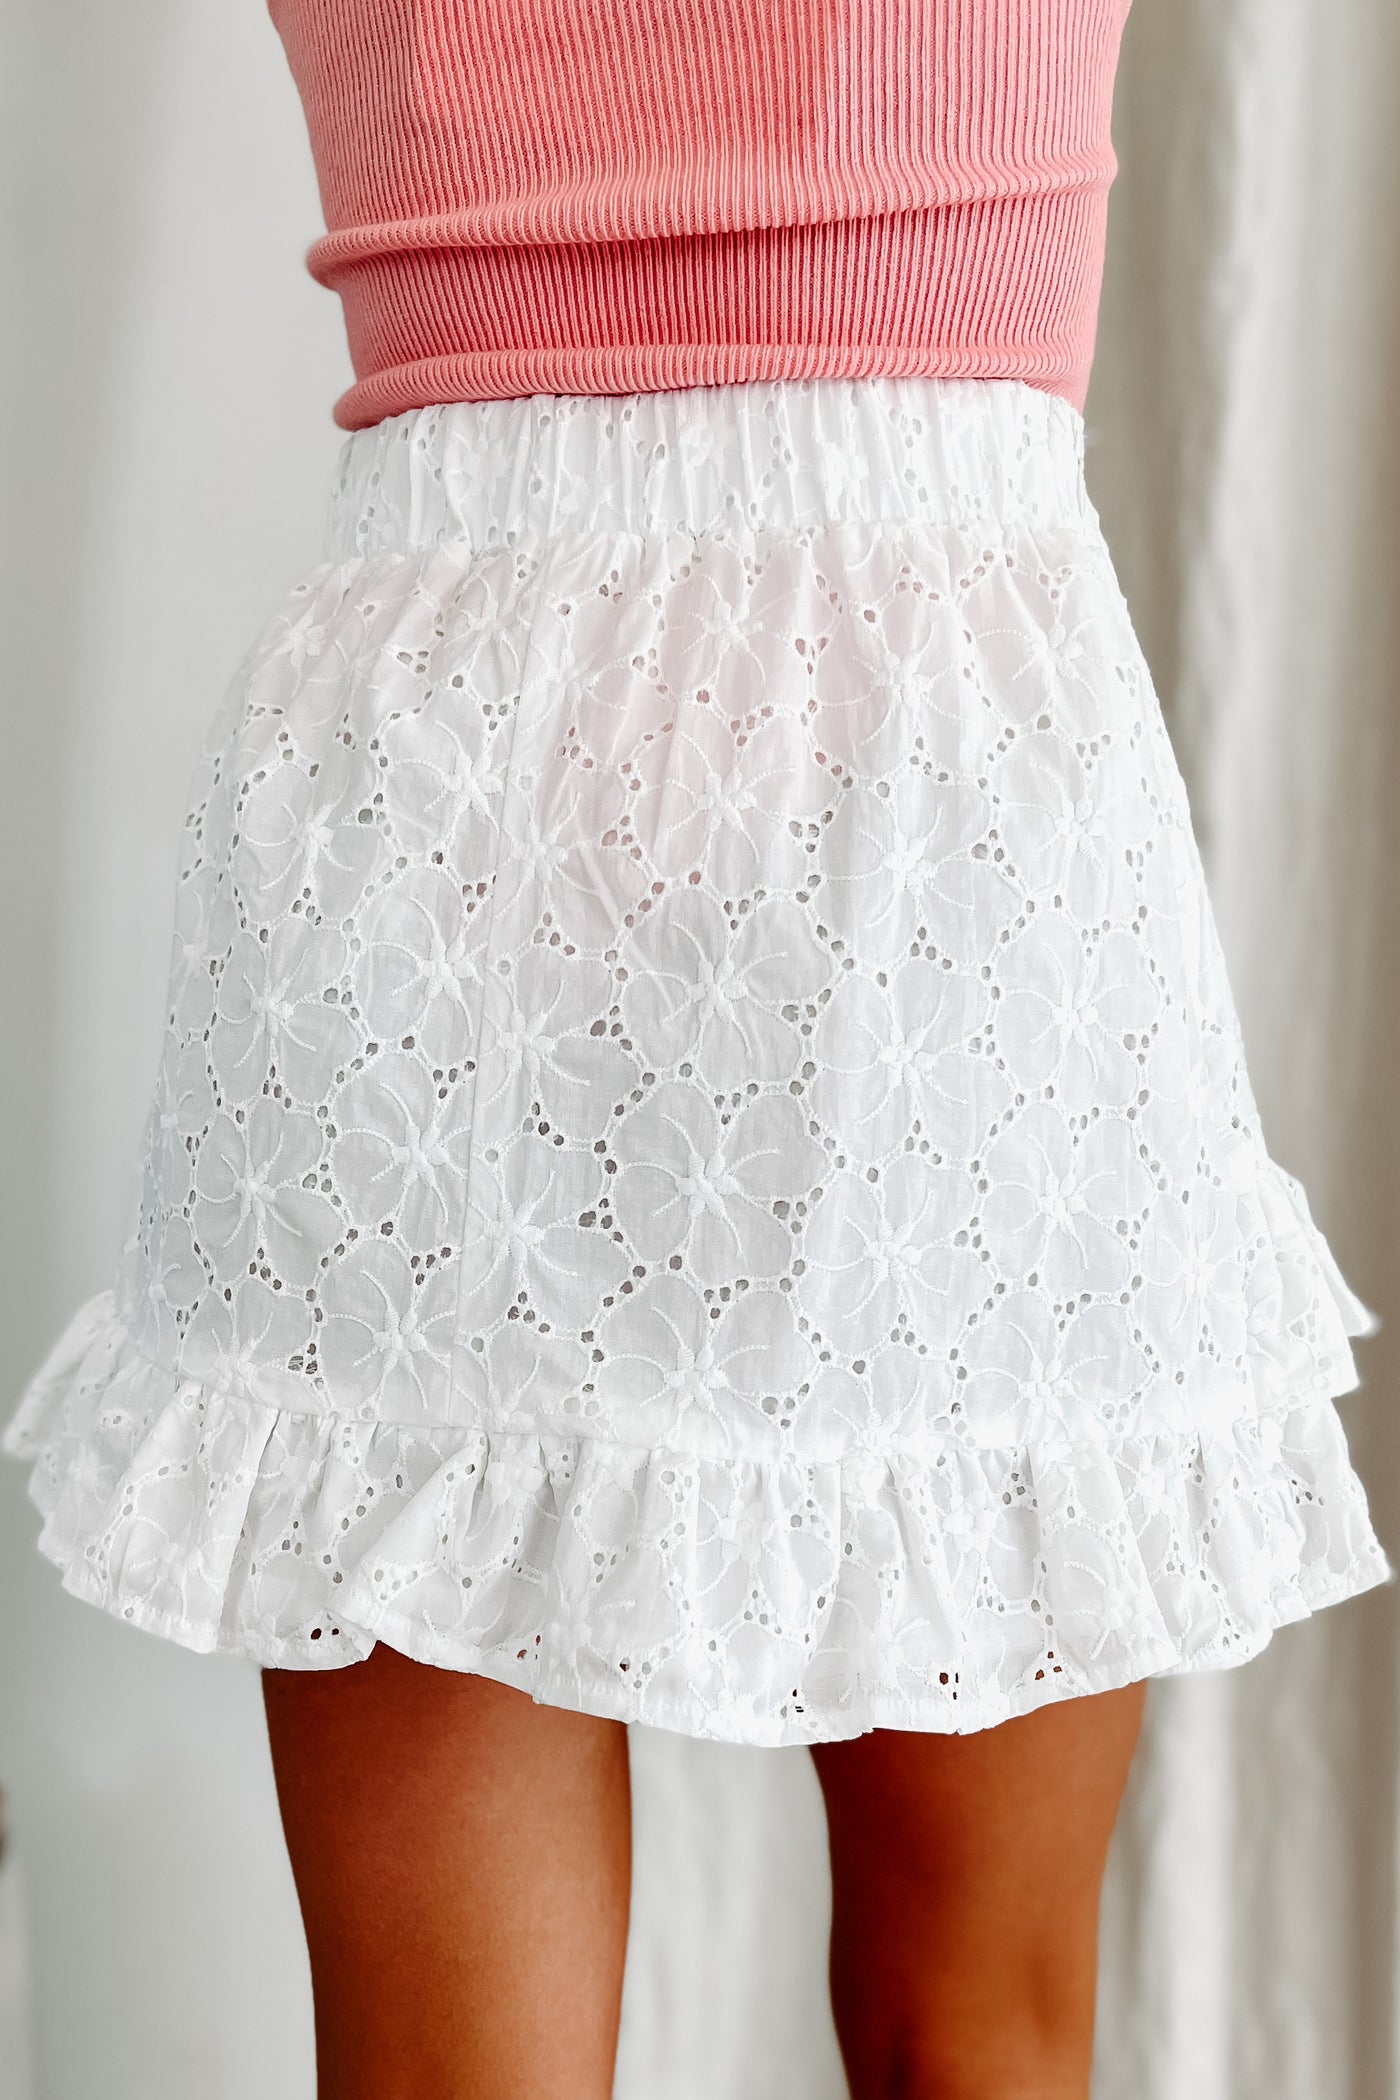 Endless Adoration Ruffled Eyelet Mini Skirt (White) - NanaMacs